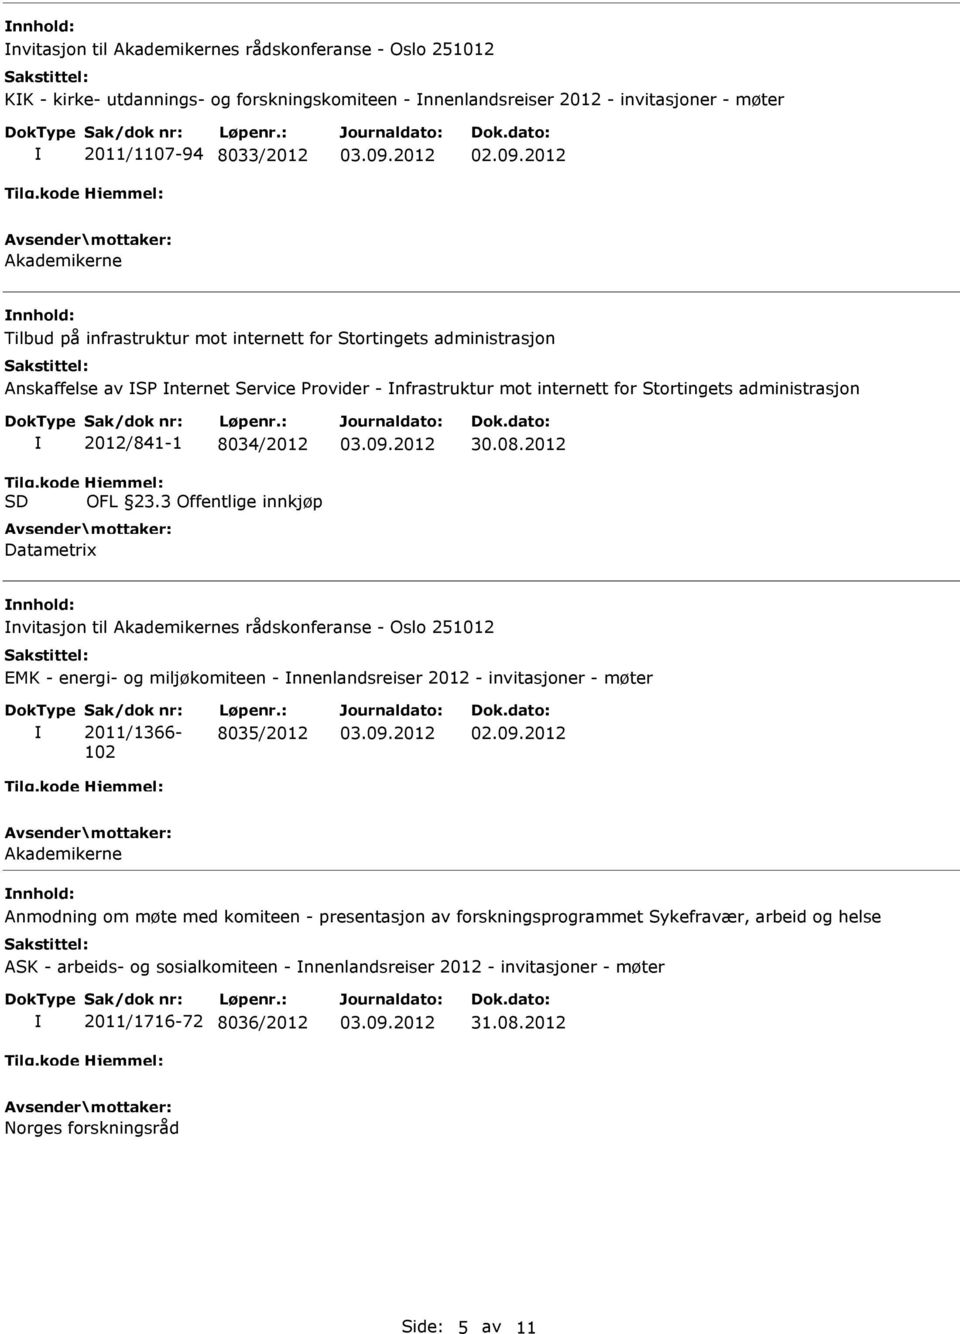 8034/2012 OFL 23.3 Offentlige innkjøp Datametrix 30.08.